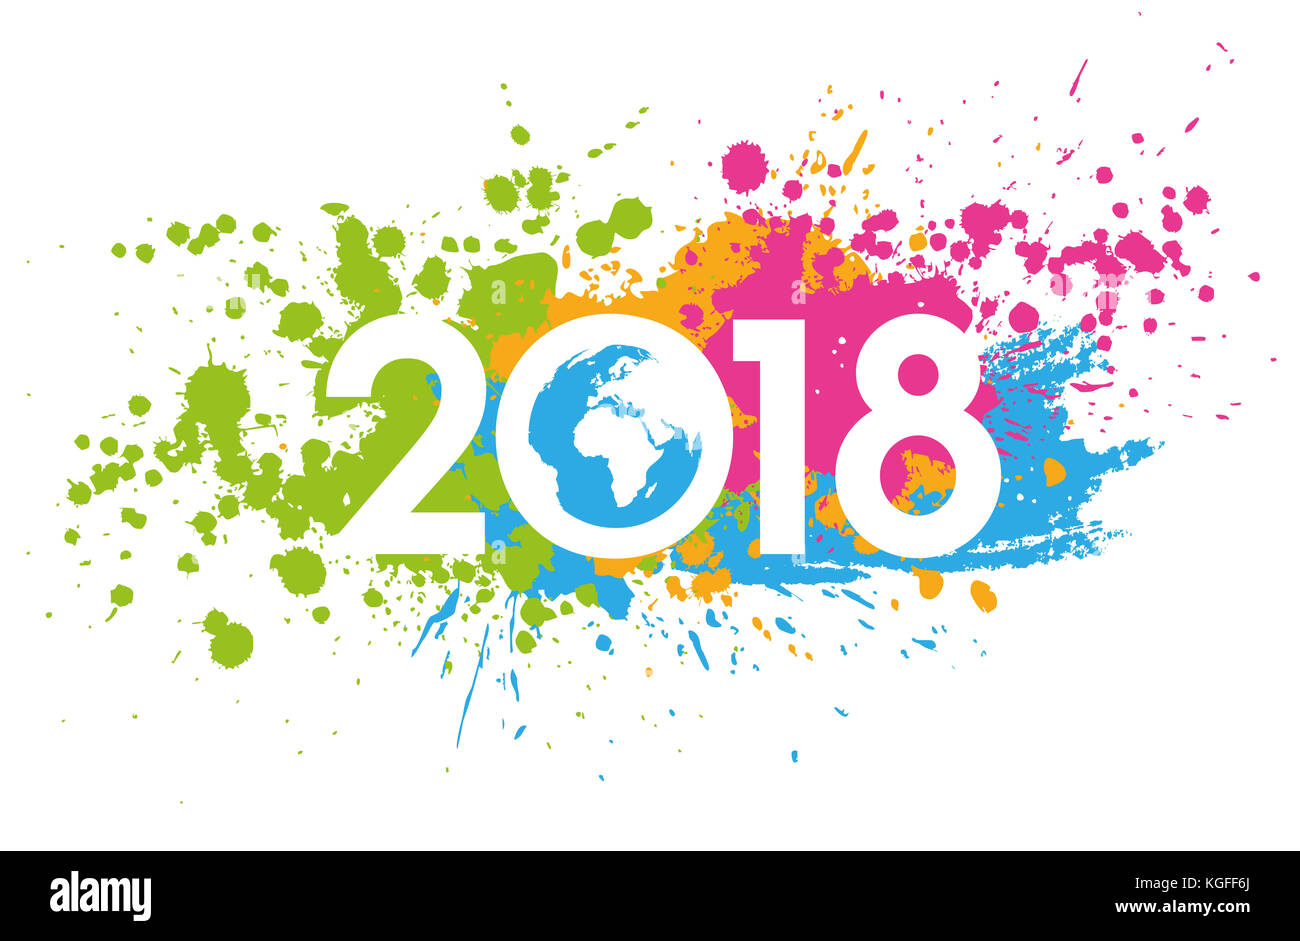 Neues Jahr 2018 Datum mit bunten Flecken bemalt Stockfoto